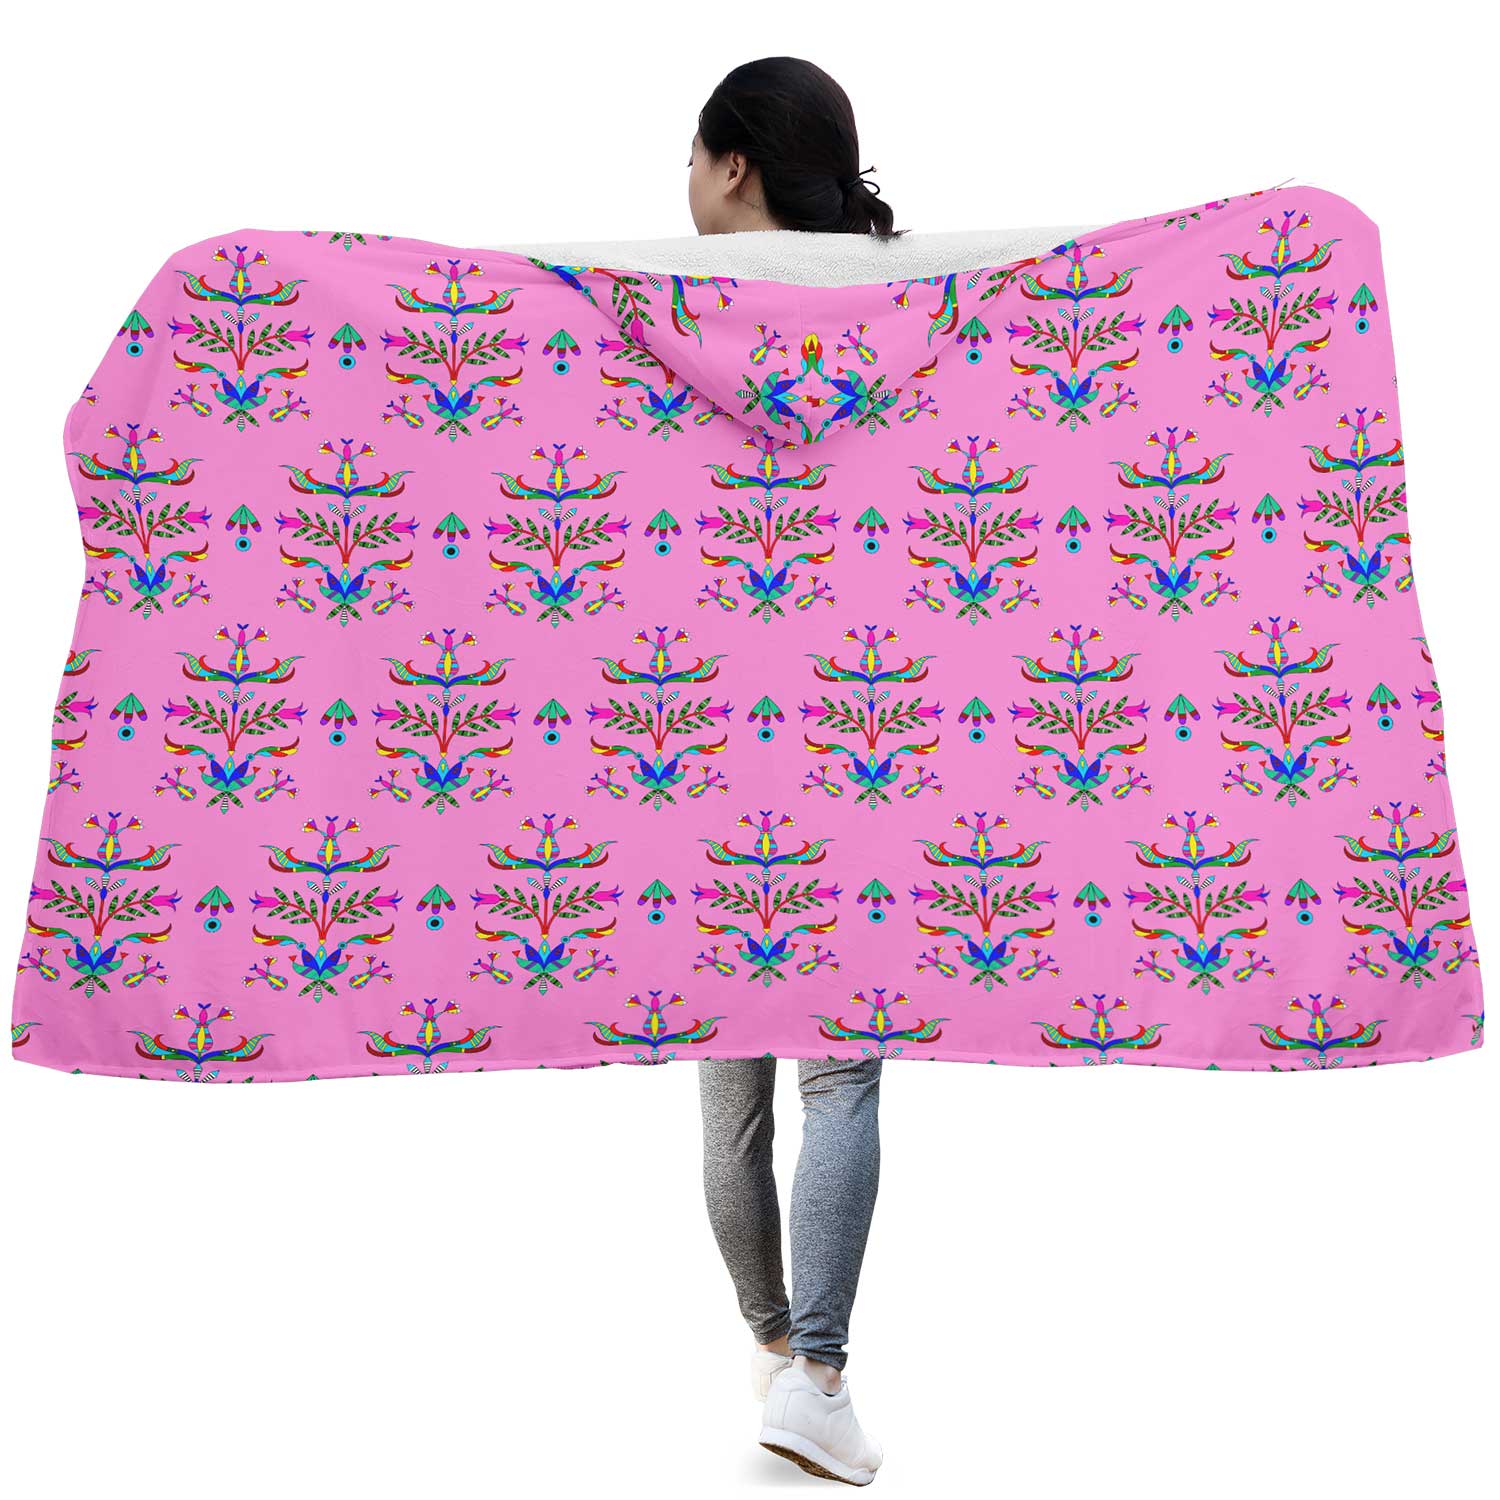 Dakota Damask Cheyenne Pink Hooded Blanket